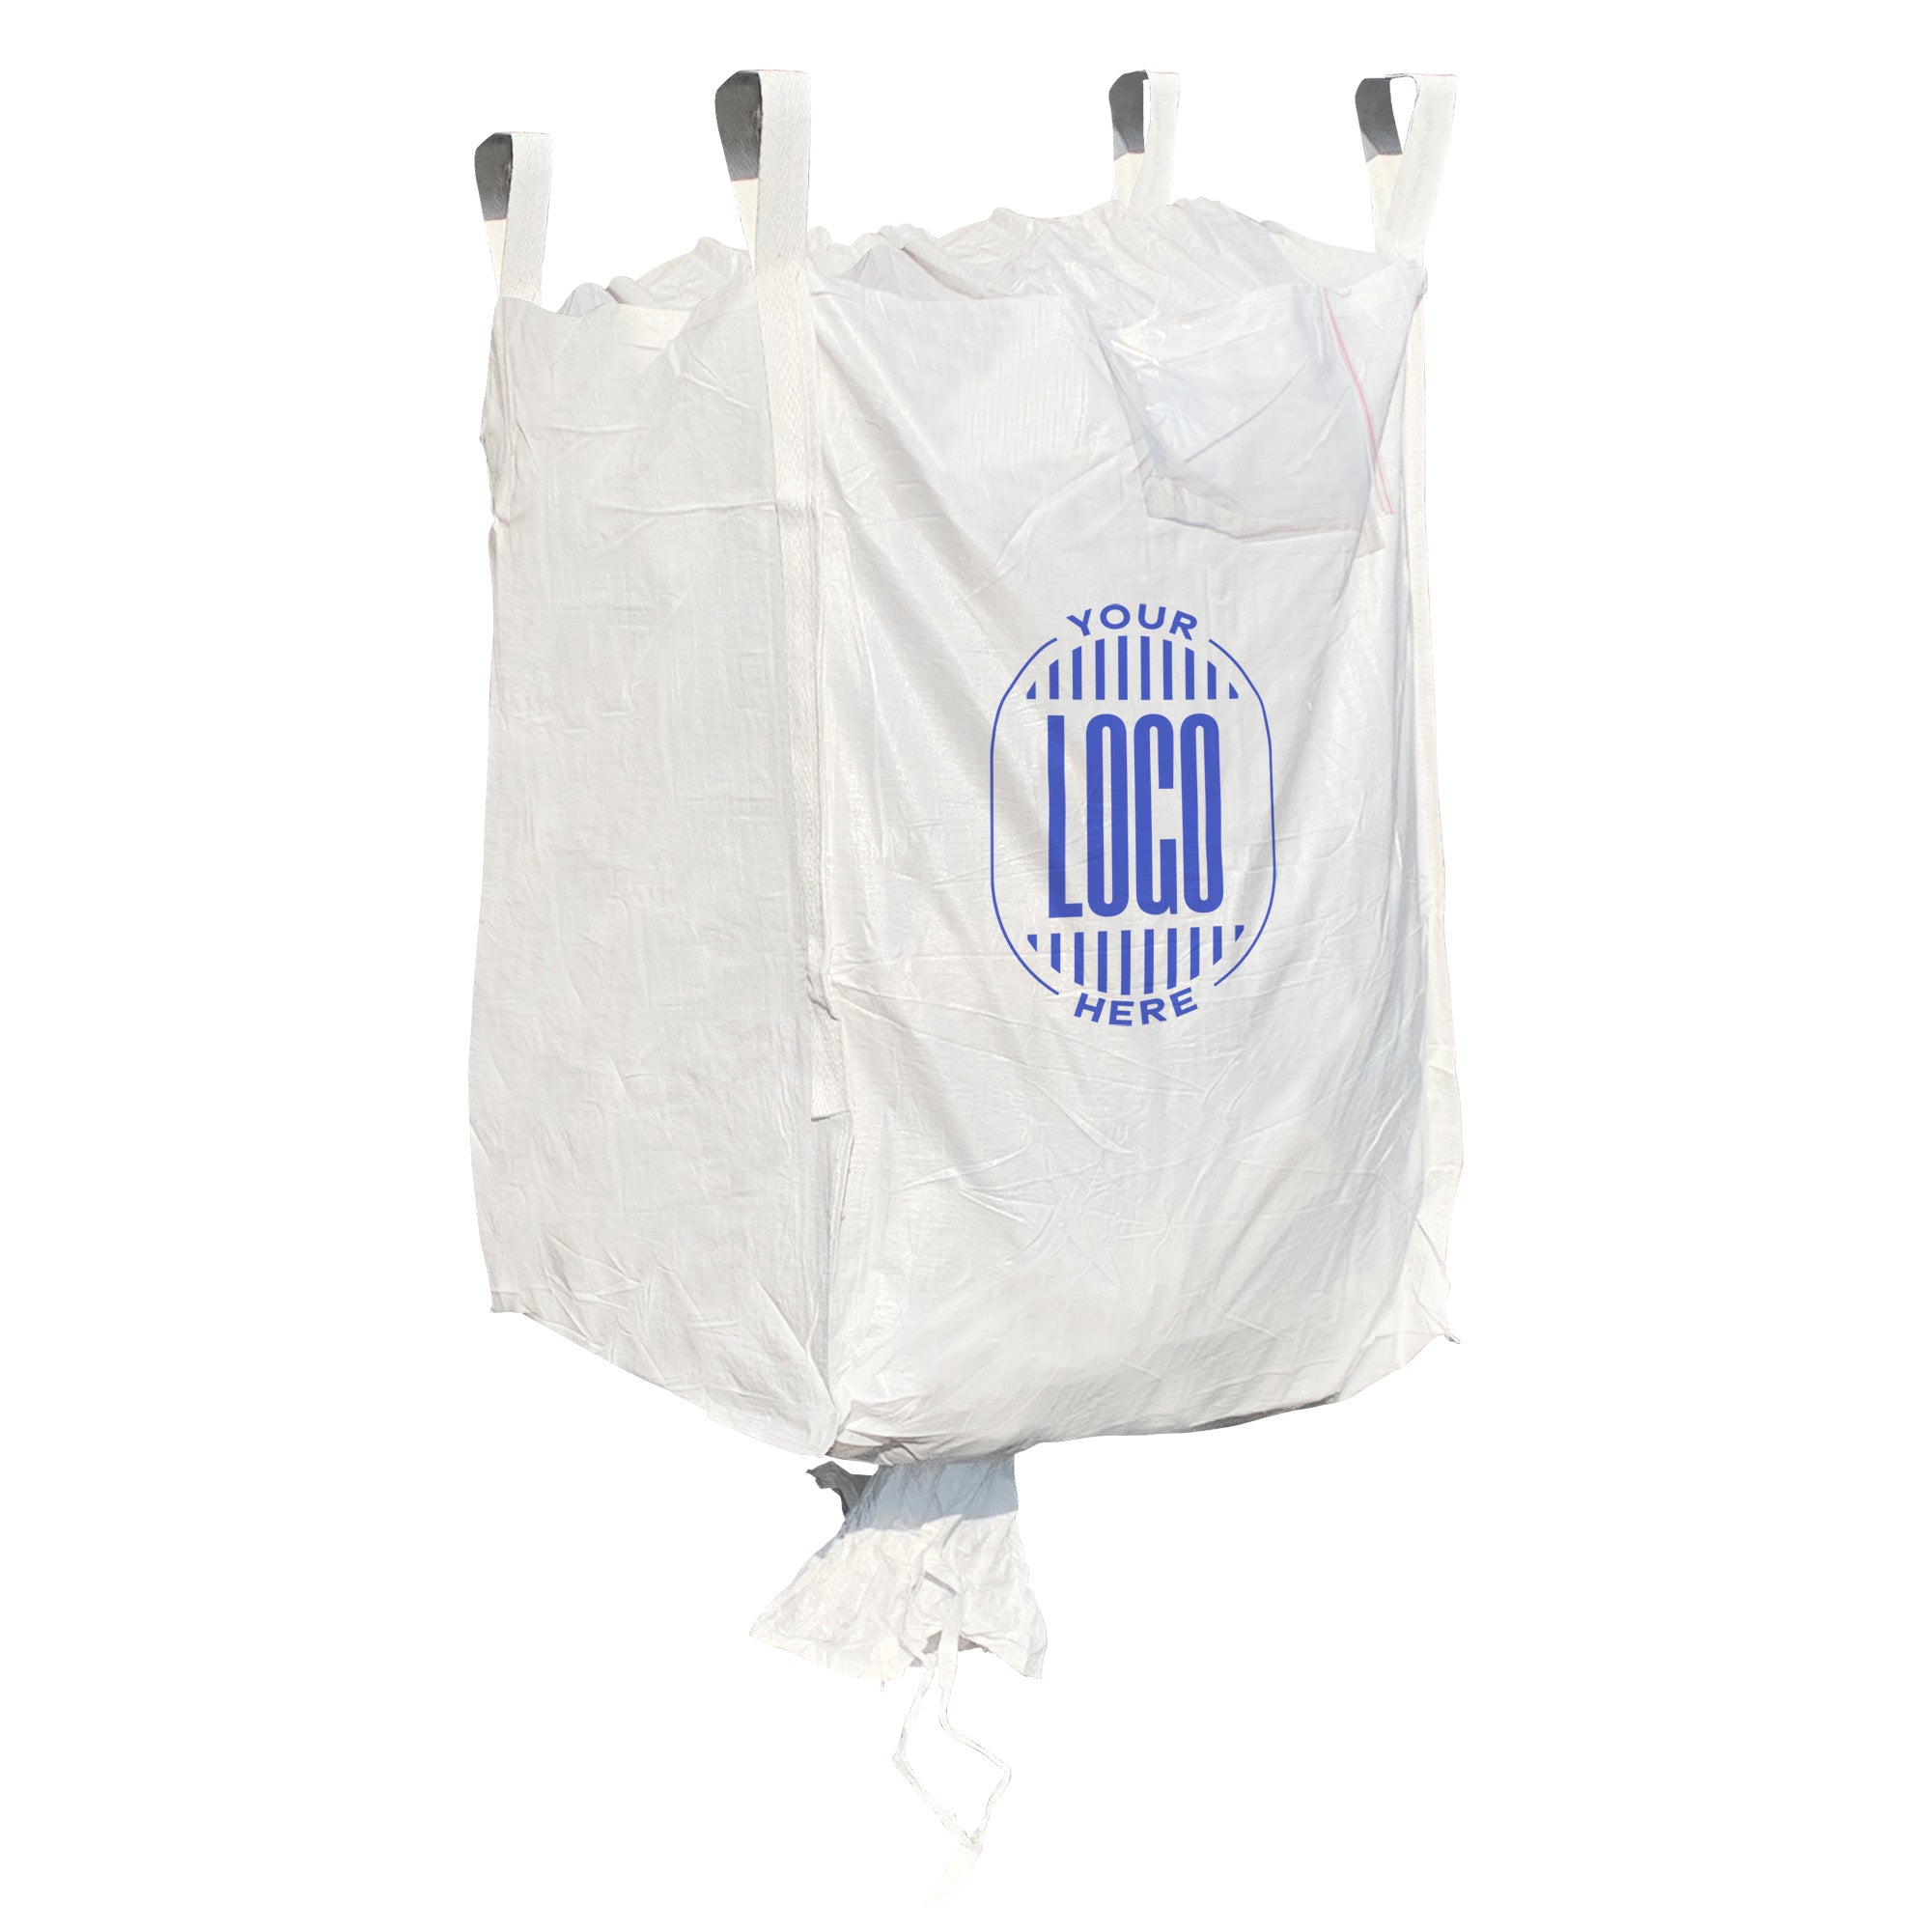 Tonnebags, Bulk Bags, FIBC bags Builders Bags Standard design & Sizes